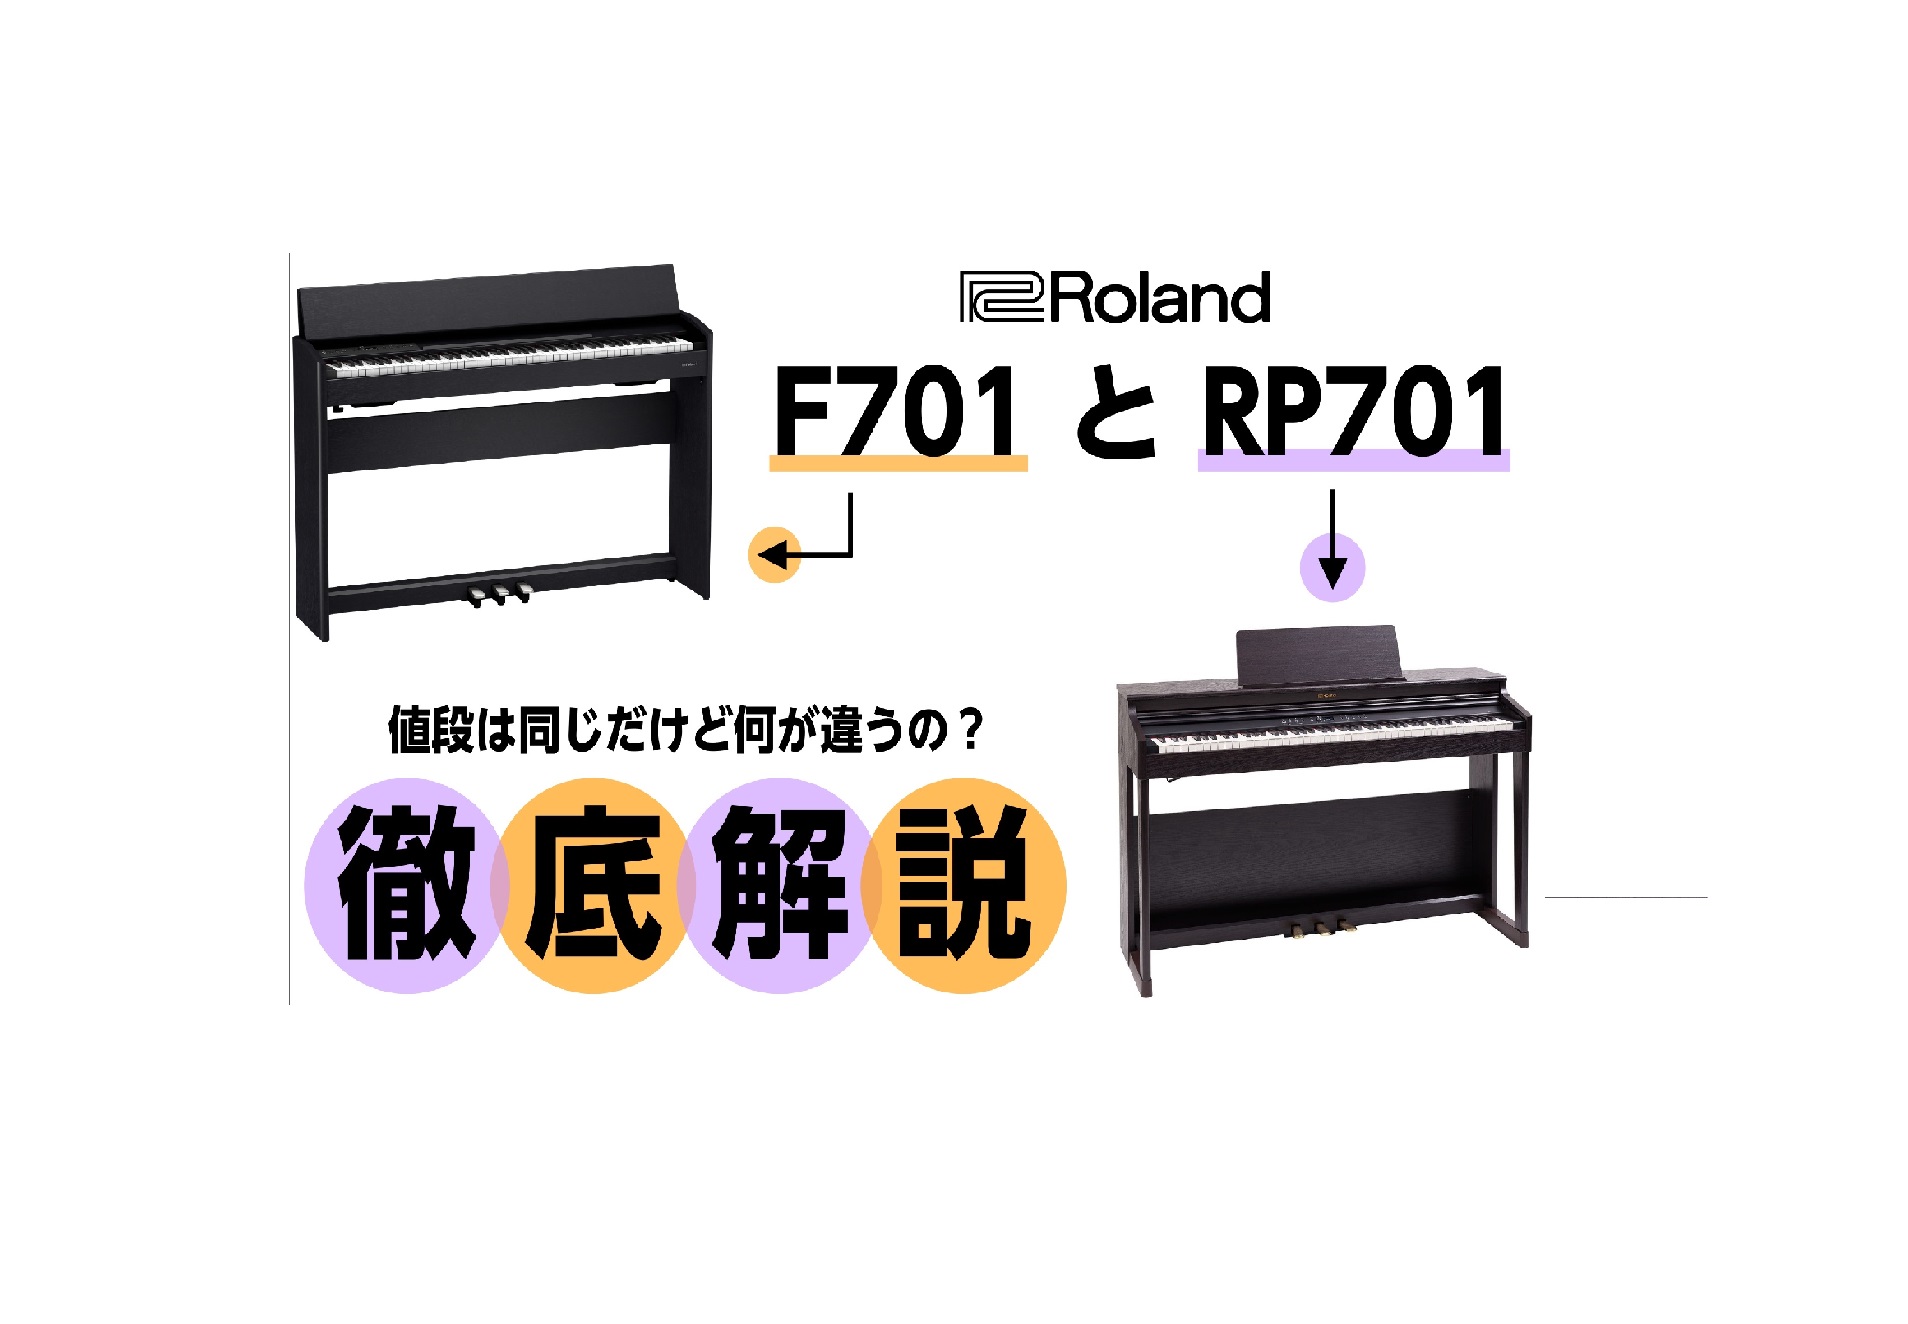 10万円台で人気のRoland電子ピアノ「F701」と「RP701」。値段が同じ二機種ですが、何が違うのでしょうか！項目に分けてそれぞれ解説していきます。 CONTENTS鍵盤音源音の聴こえ方（スピーカー）ペダル機能デザインまとめと選び方【答えを早く知りたい方はコチラ💁】YAMAHA、KAWAIの1 […]